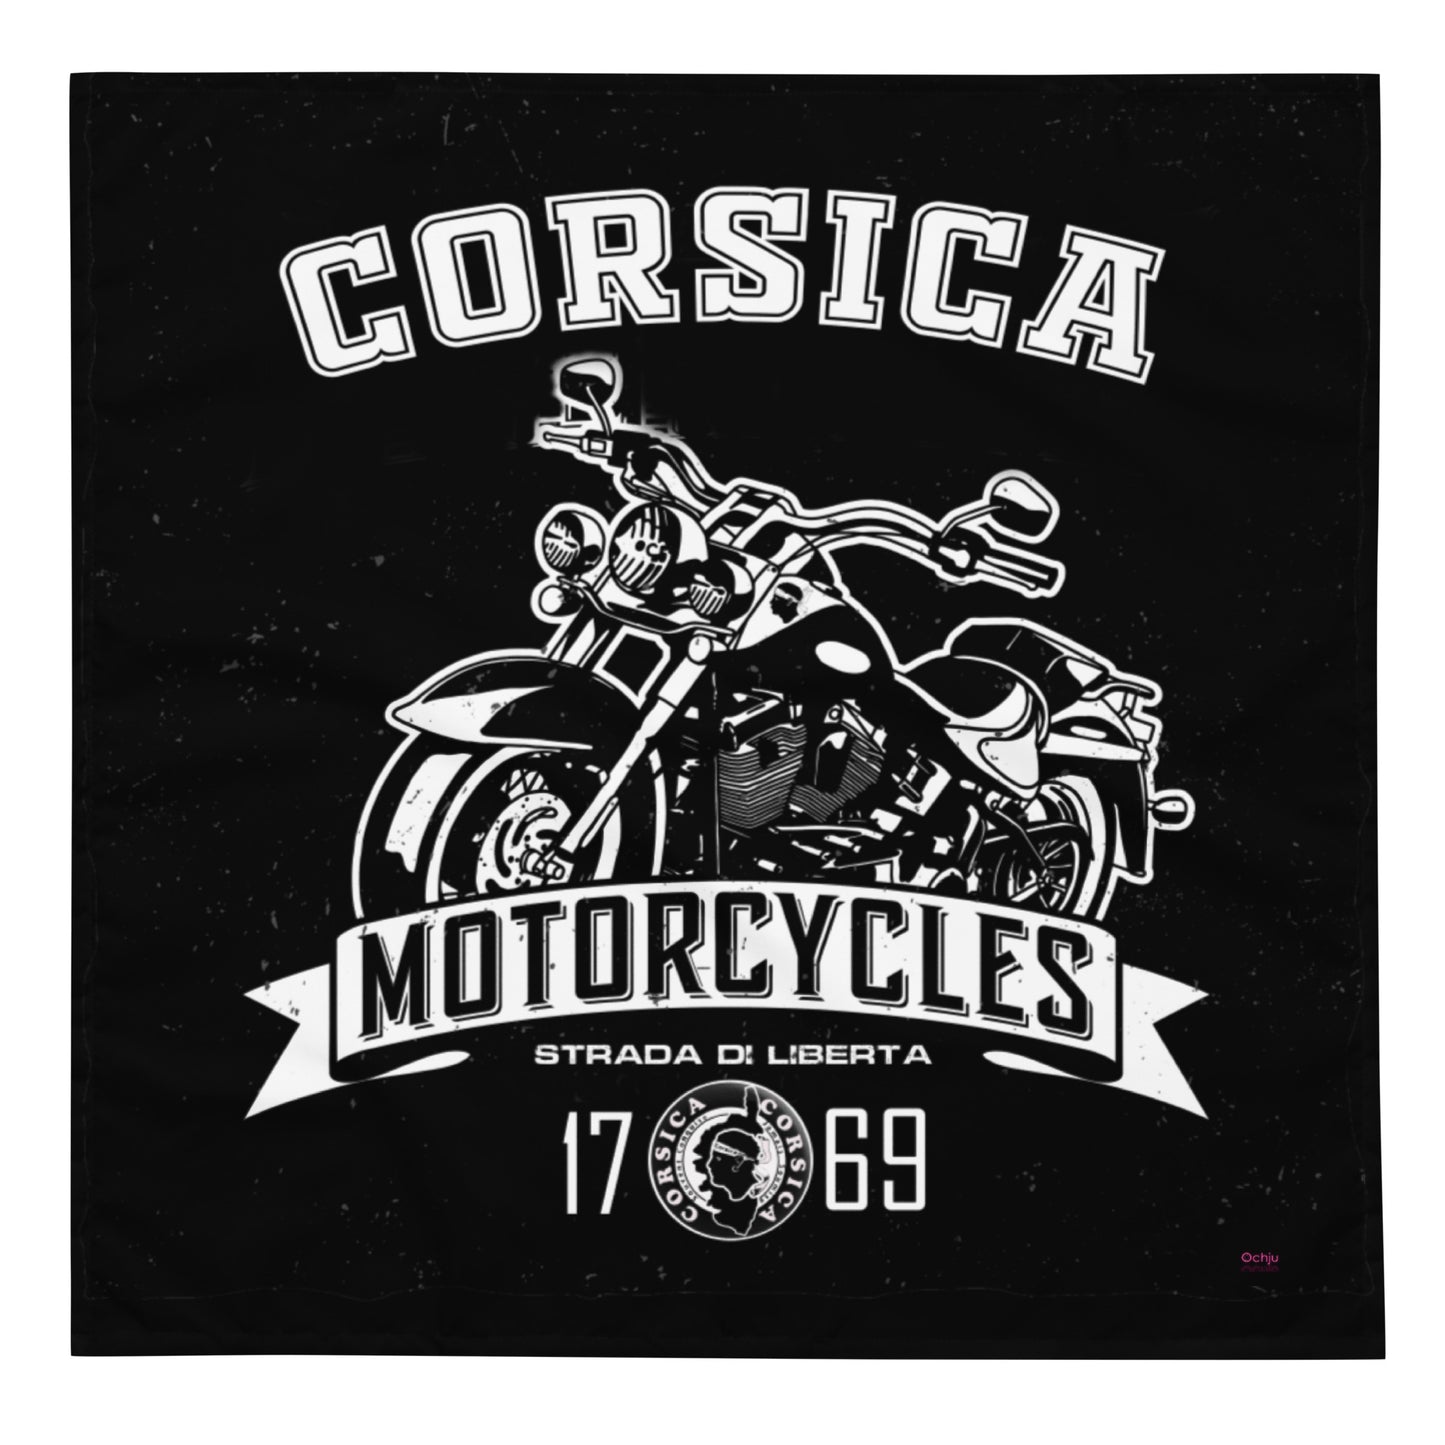 Bandana all over Motorcycle Corsica